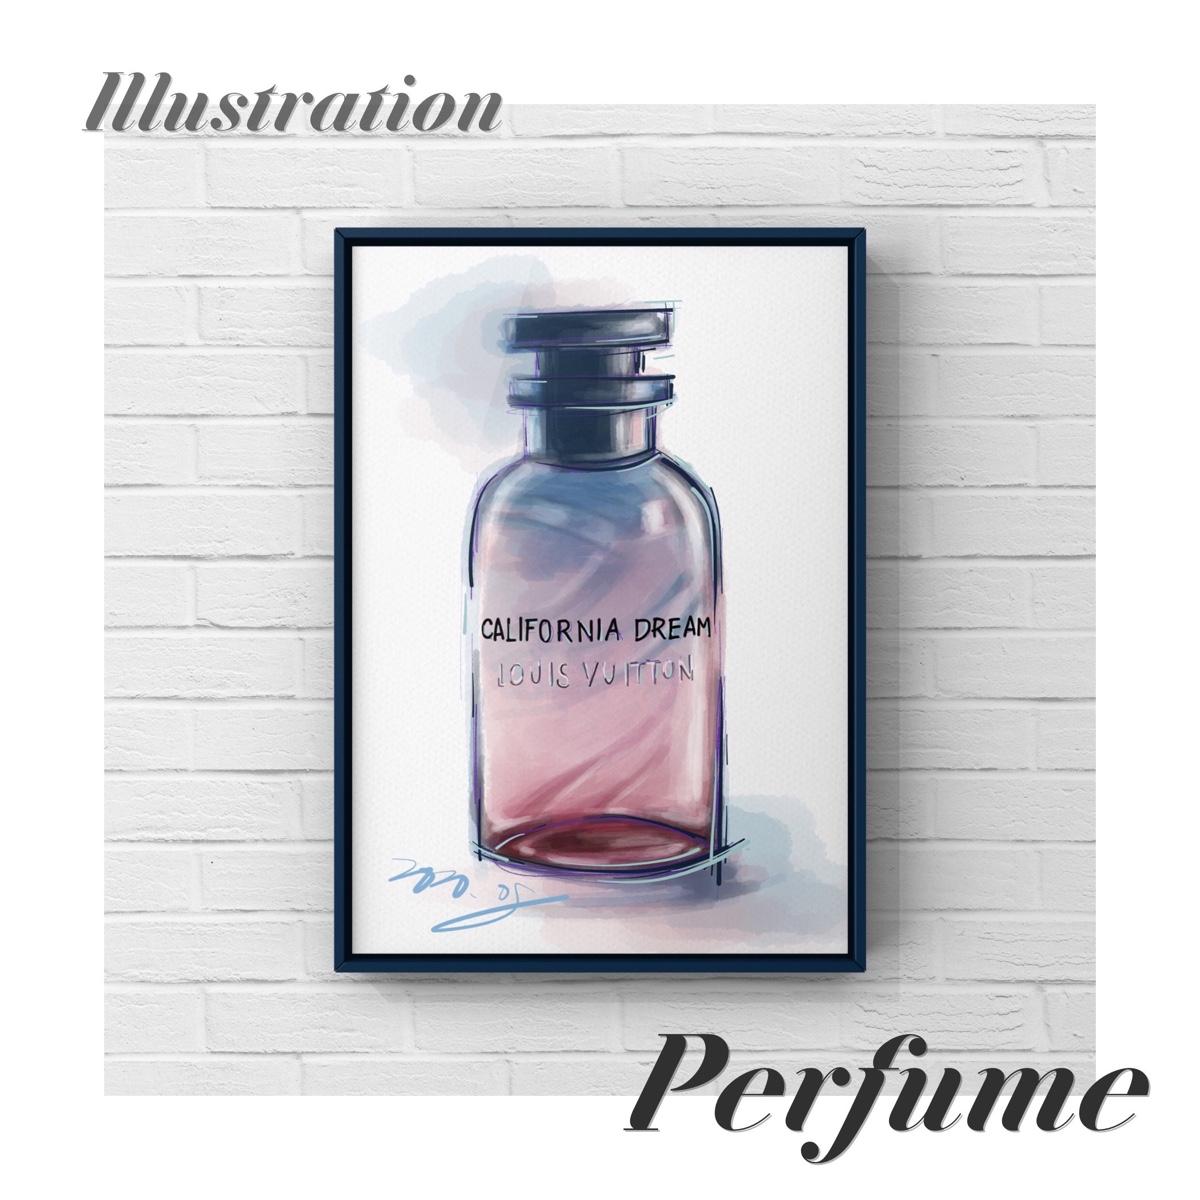 就是愛畫香水瓶：Louis Vuitton的California Dream 香水-妝漂亮版